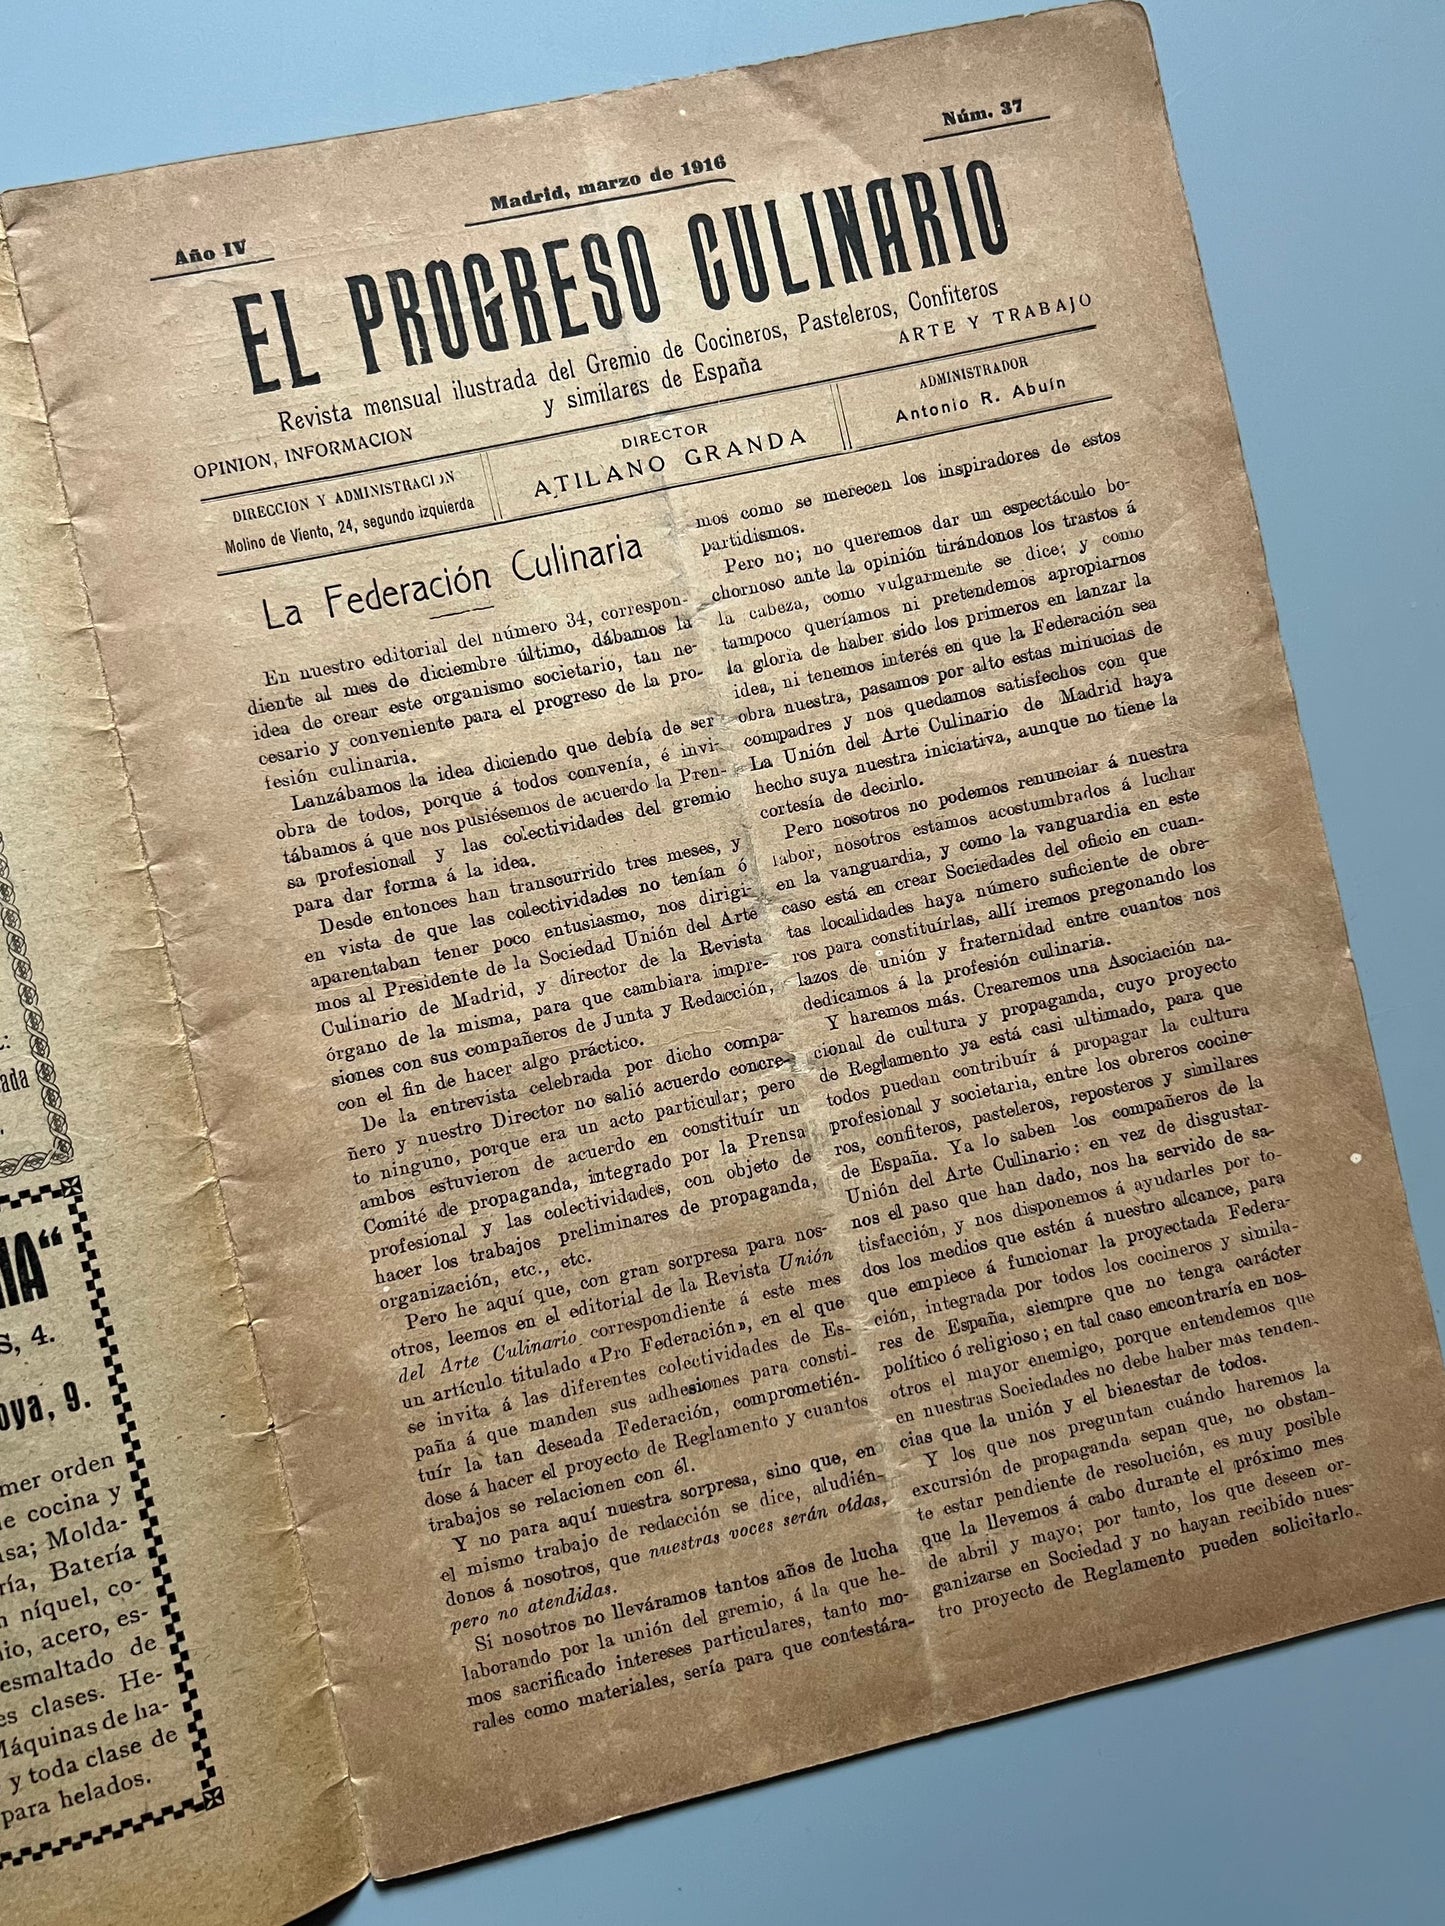 El progreso culinario nº37 - Madrid, marzo de 1916